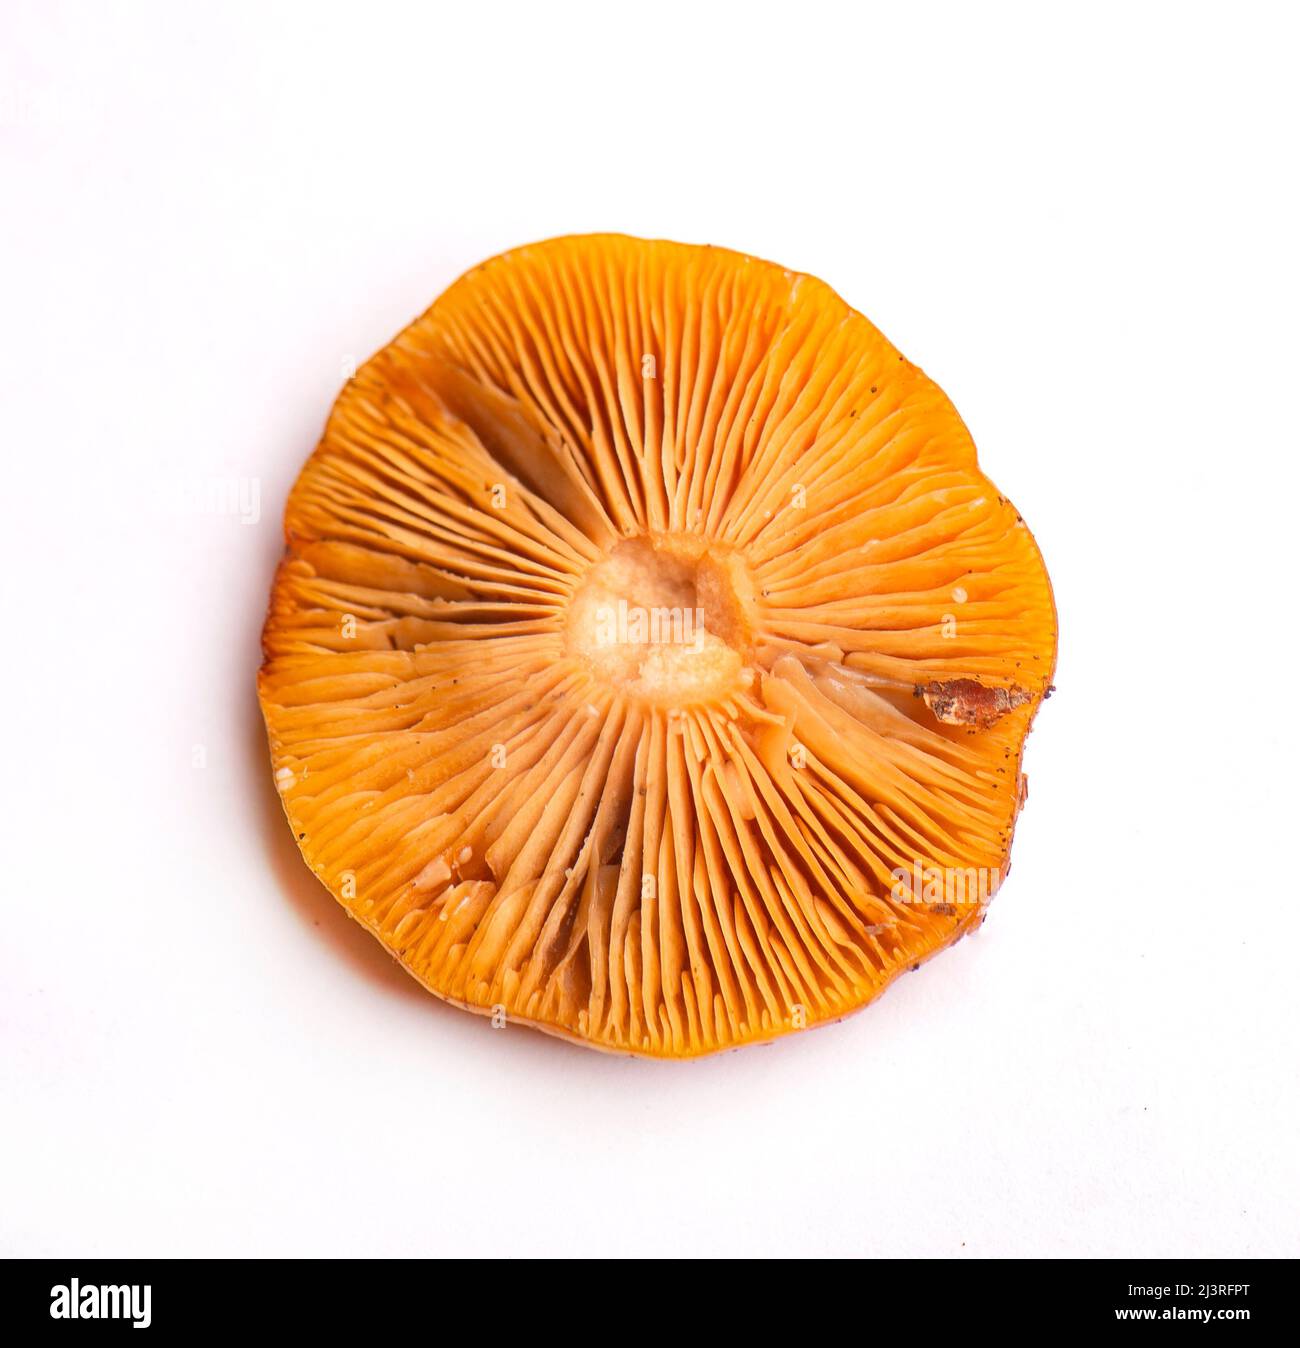 Dettaglio di funghi selvatici raccolti sull'isola di Vancouver, Canada Foto Stock